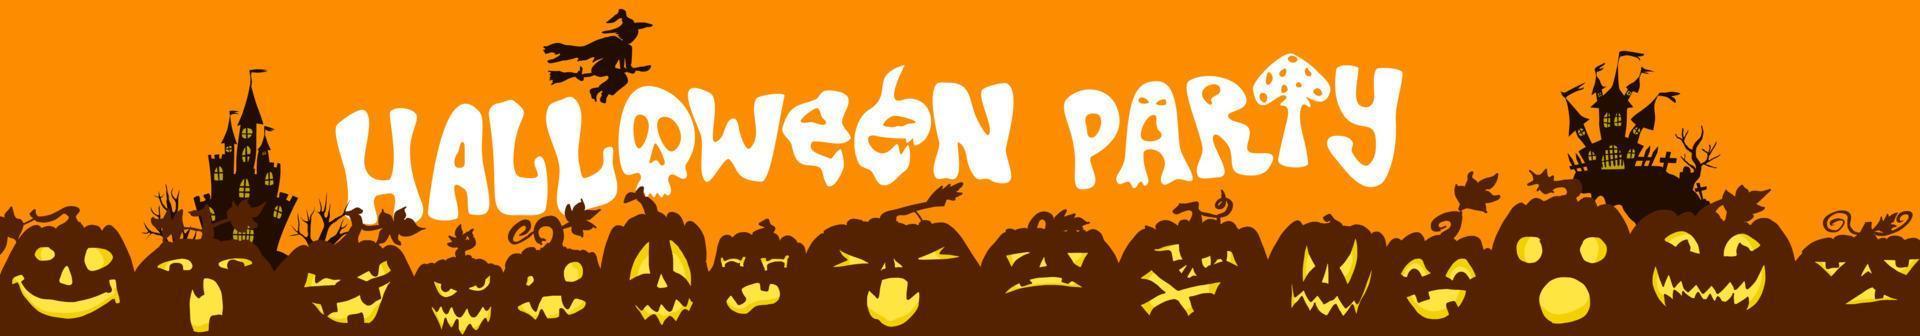 Halloween-Party-Plakat. Burgen und Kürbisse vektor